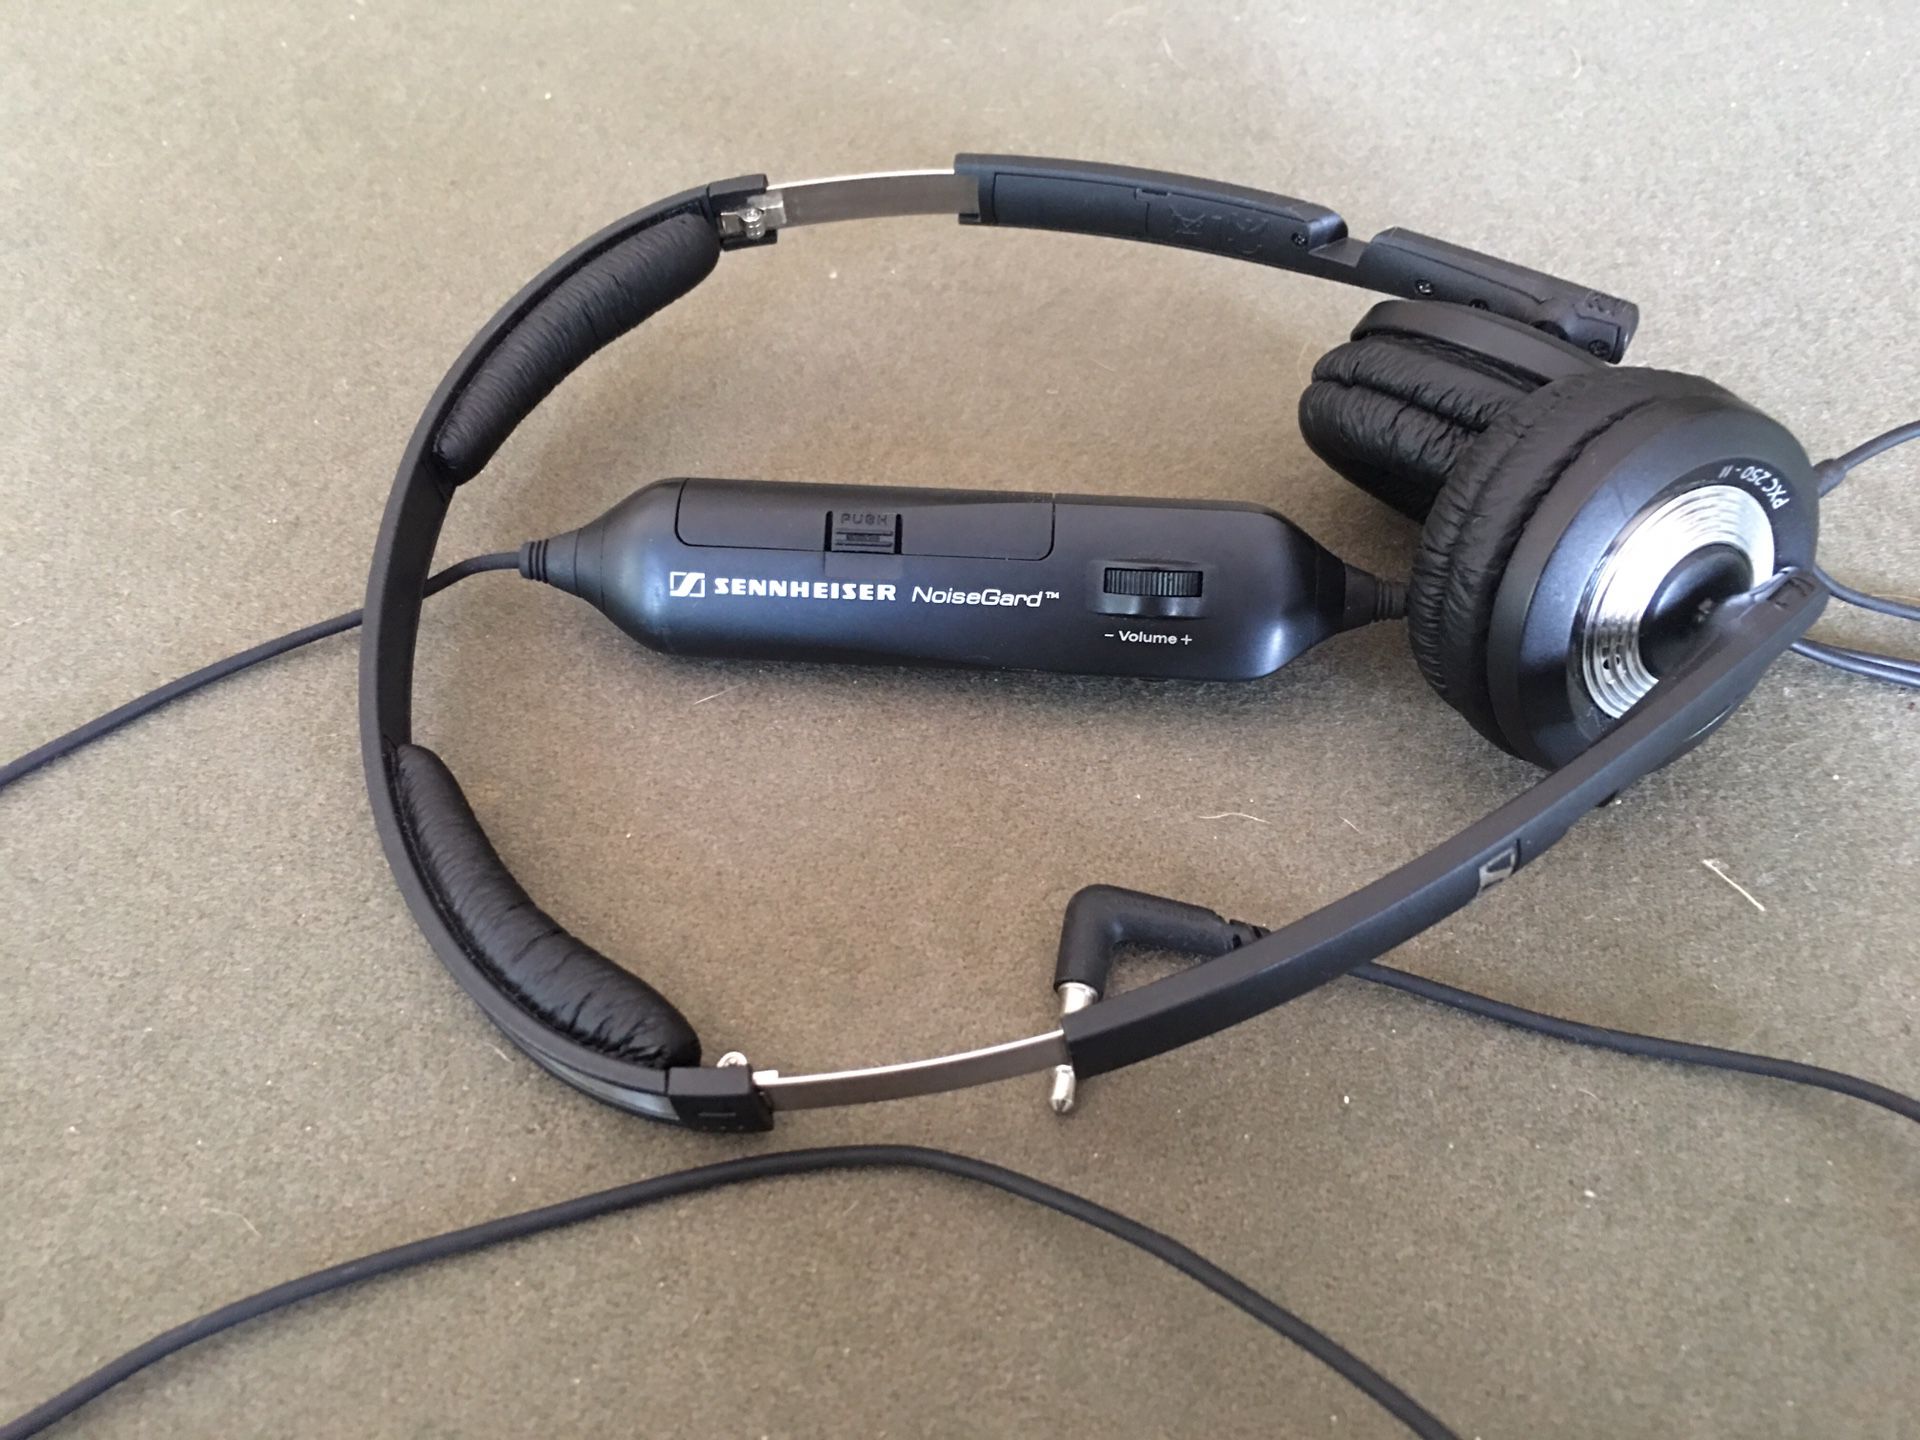 Sennheiser NoiseGard headphones